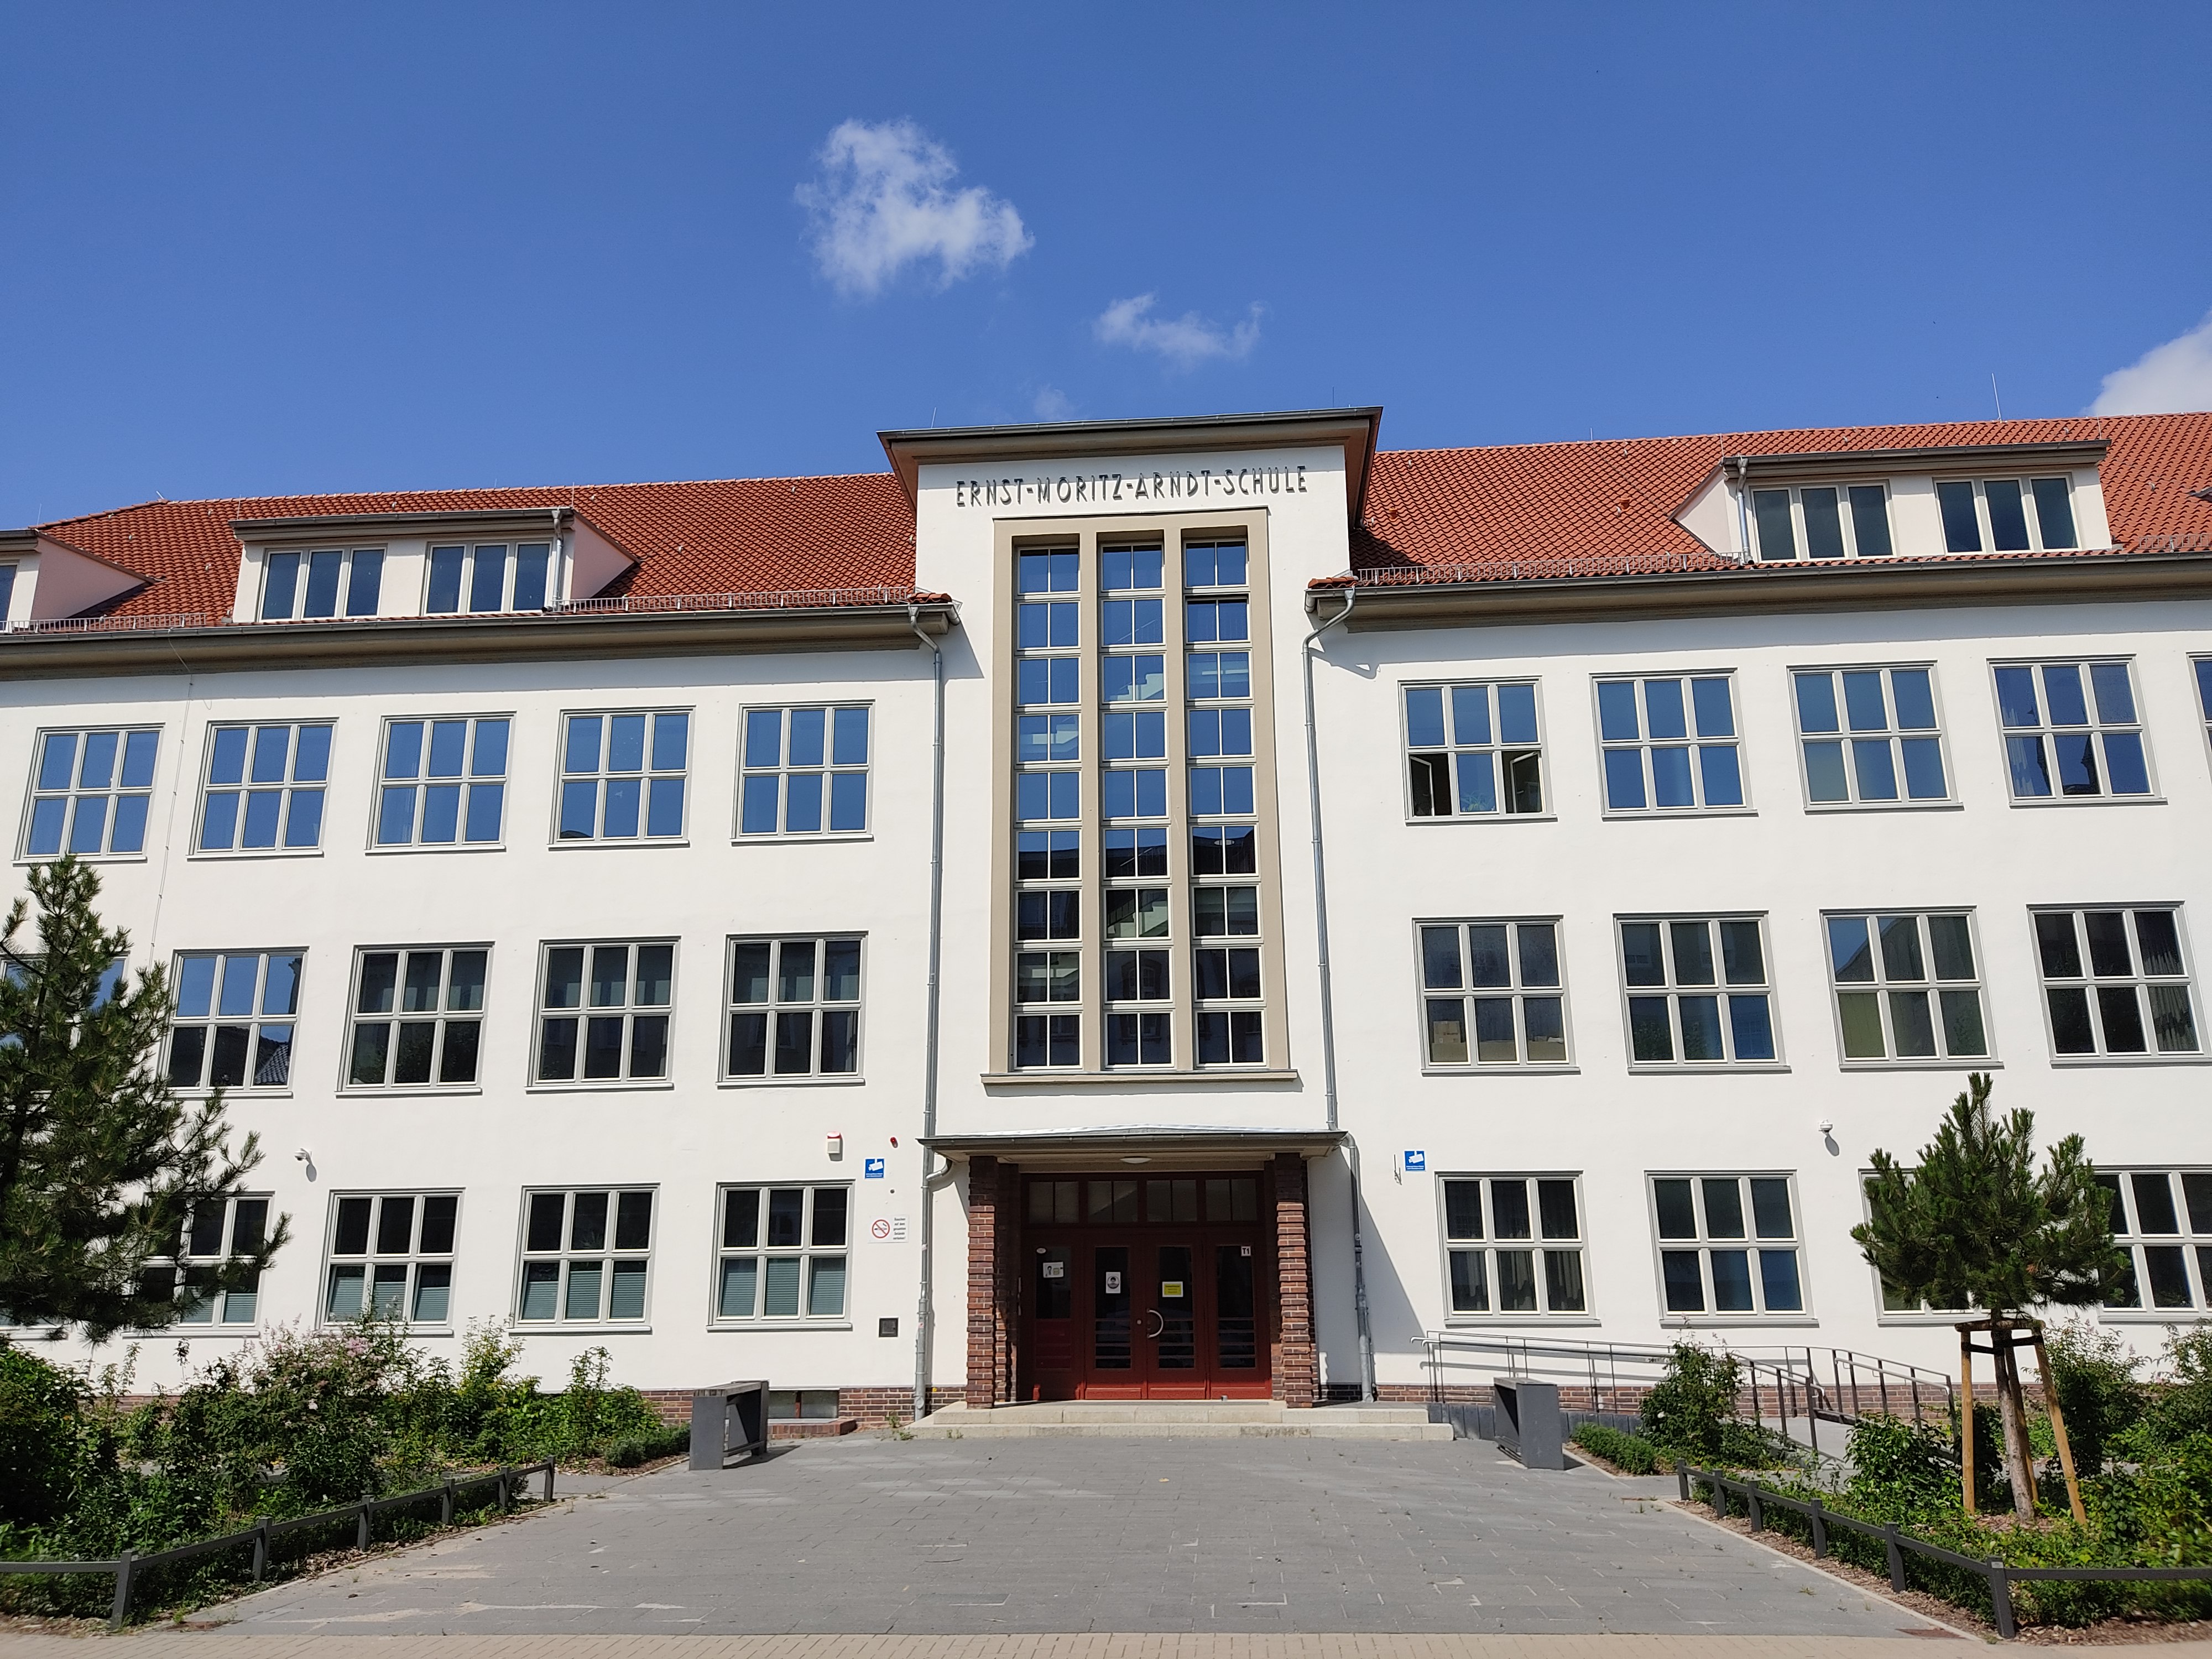 Regionale Schule Ernst Moritz Arndt